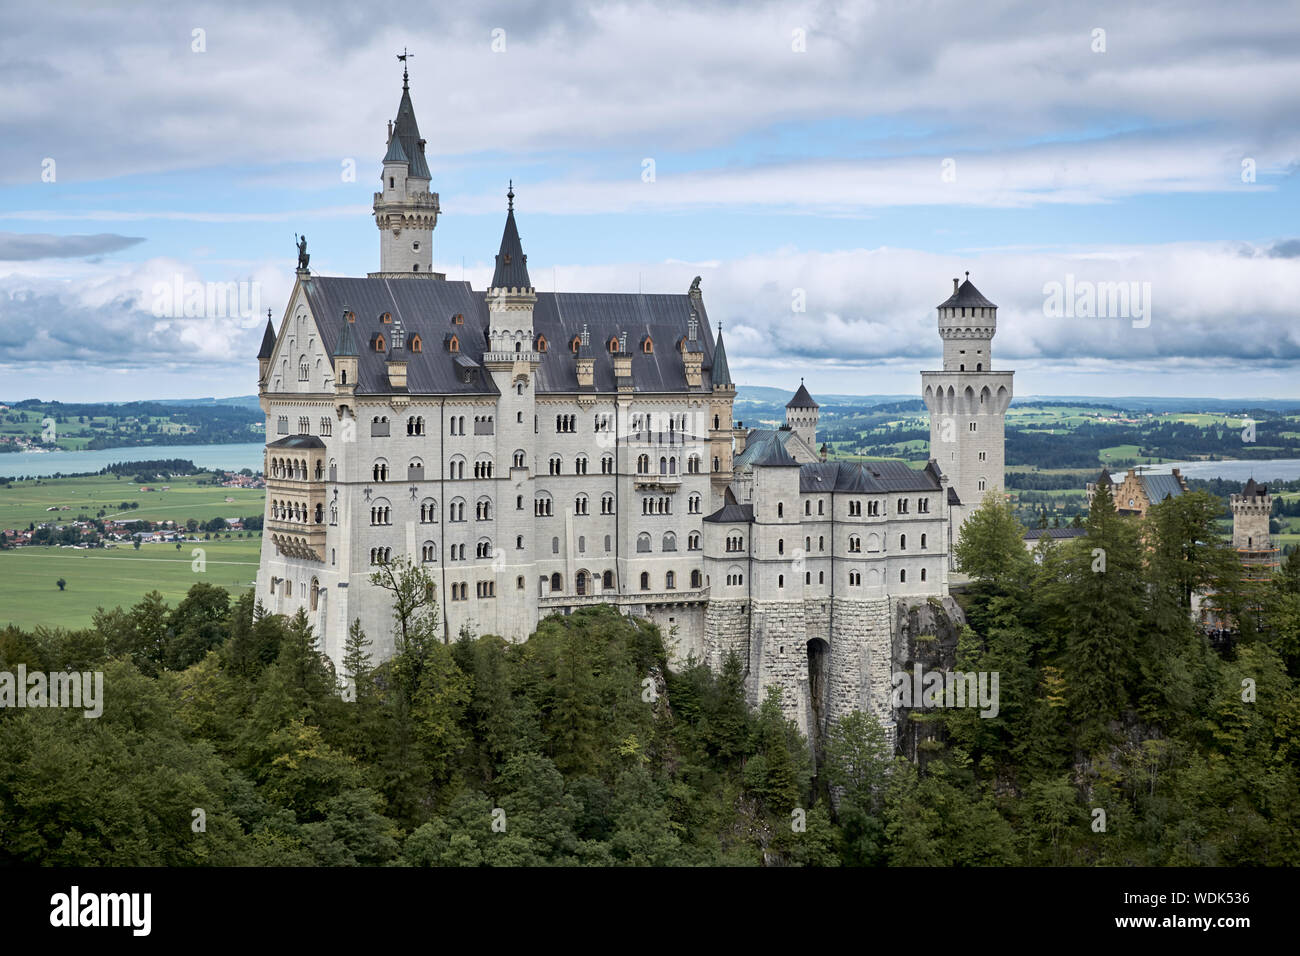 Vue de la célèbre attraction touristique dans les Alpes bavaroises - le château de Neuschwanstein en face de ciel bleu et de la nature / 2019 Banque D'Images